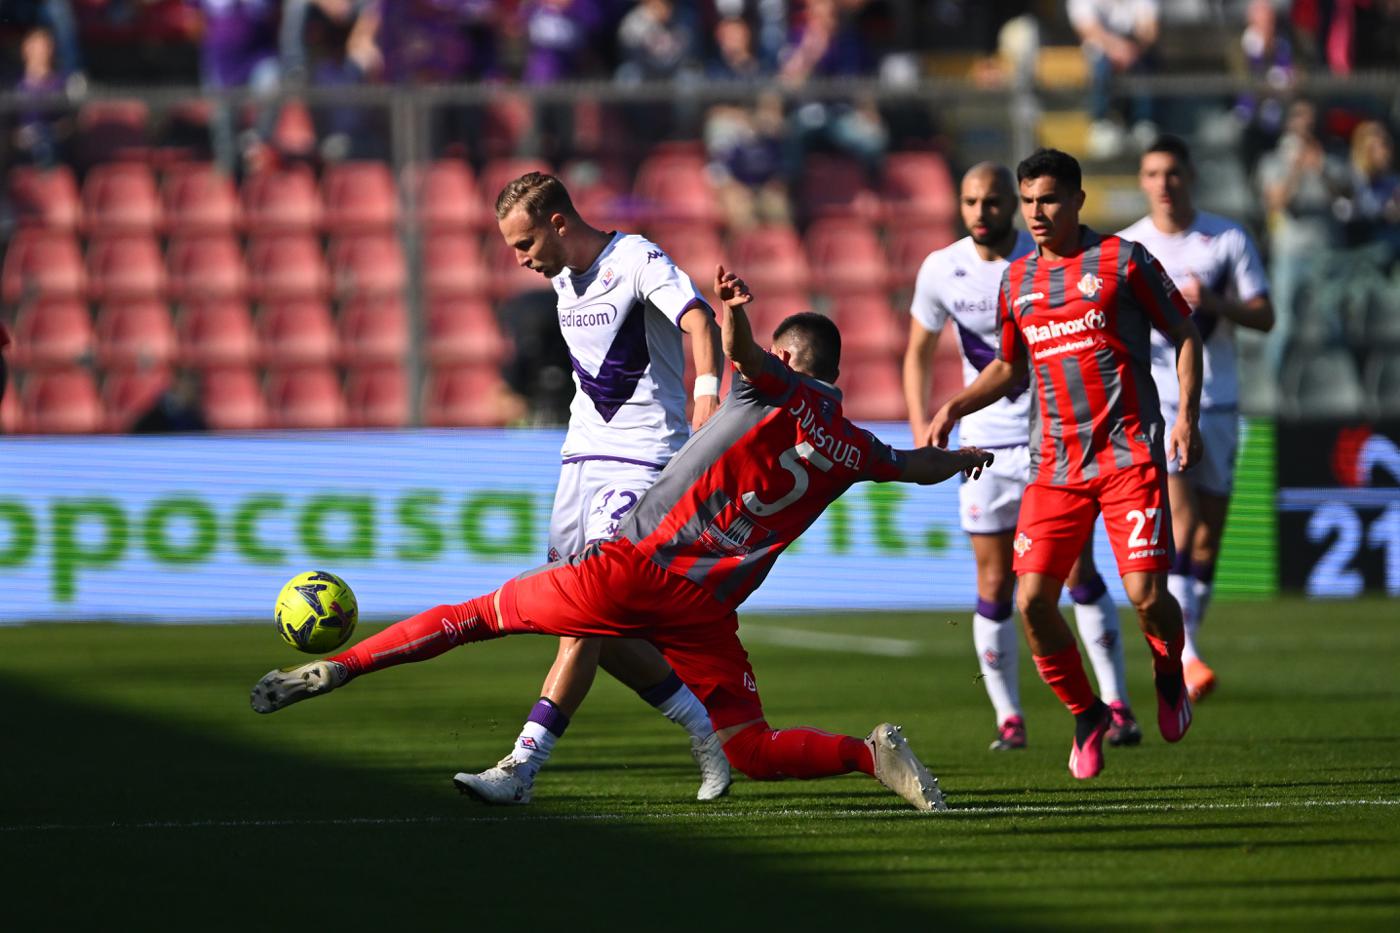 Cremonese - Fiorentina - 0-2. Mistrzostwa Włoch, runda 26. Przegląd meczu, statystyki.